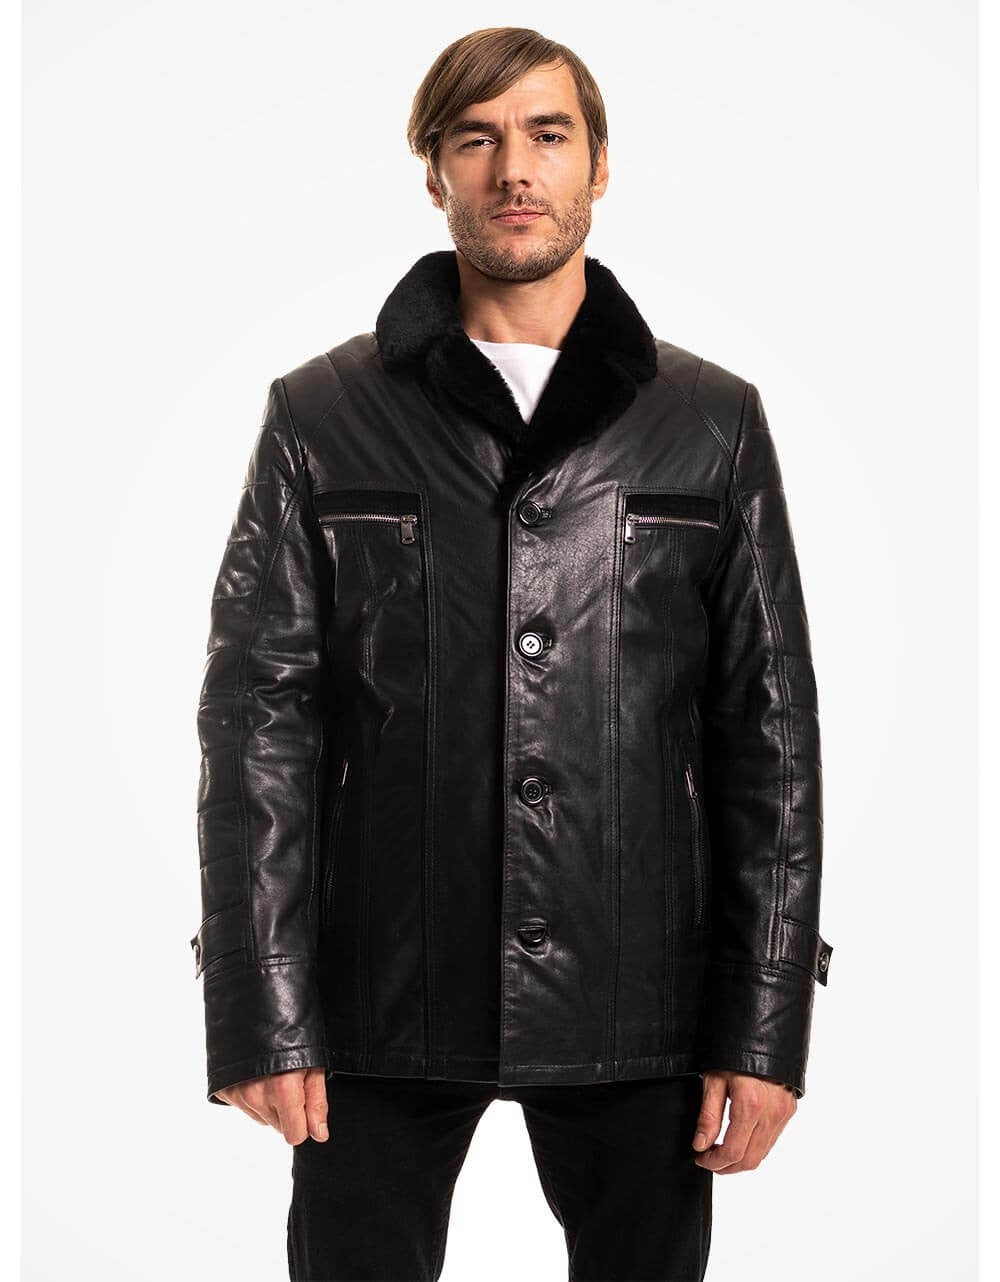 Black Vegetal Leather Coat For Men